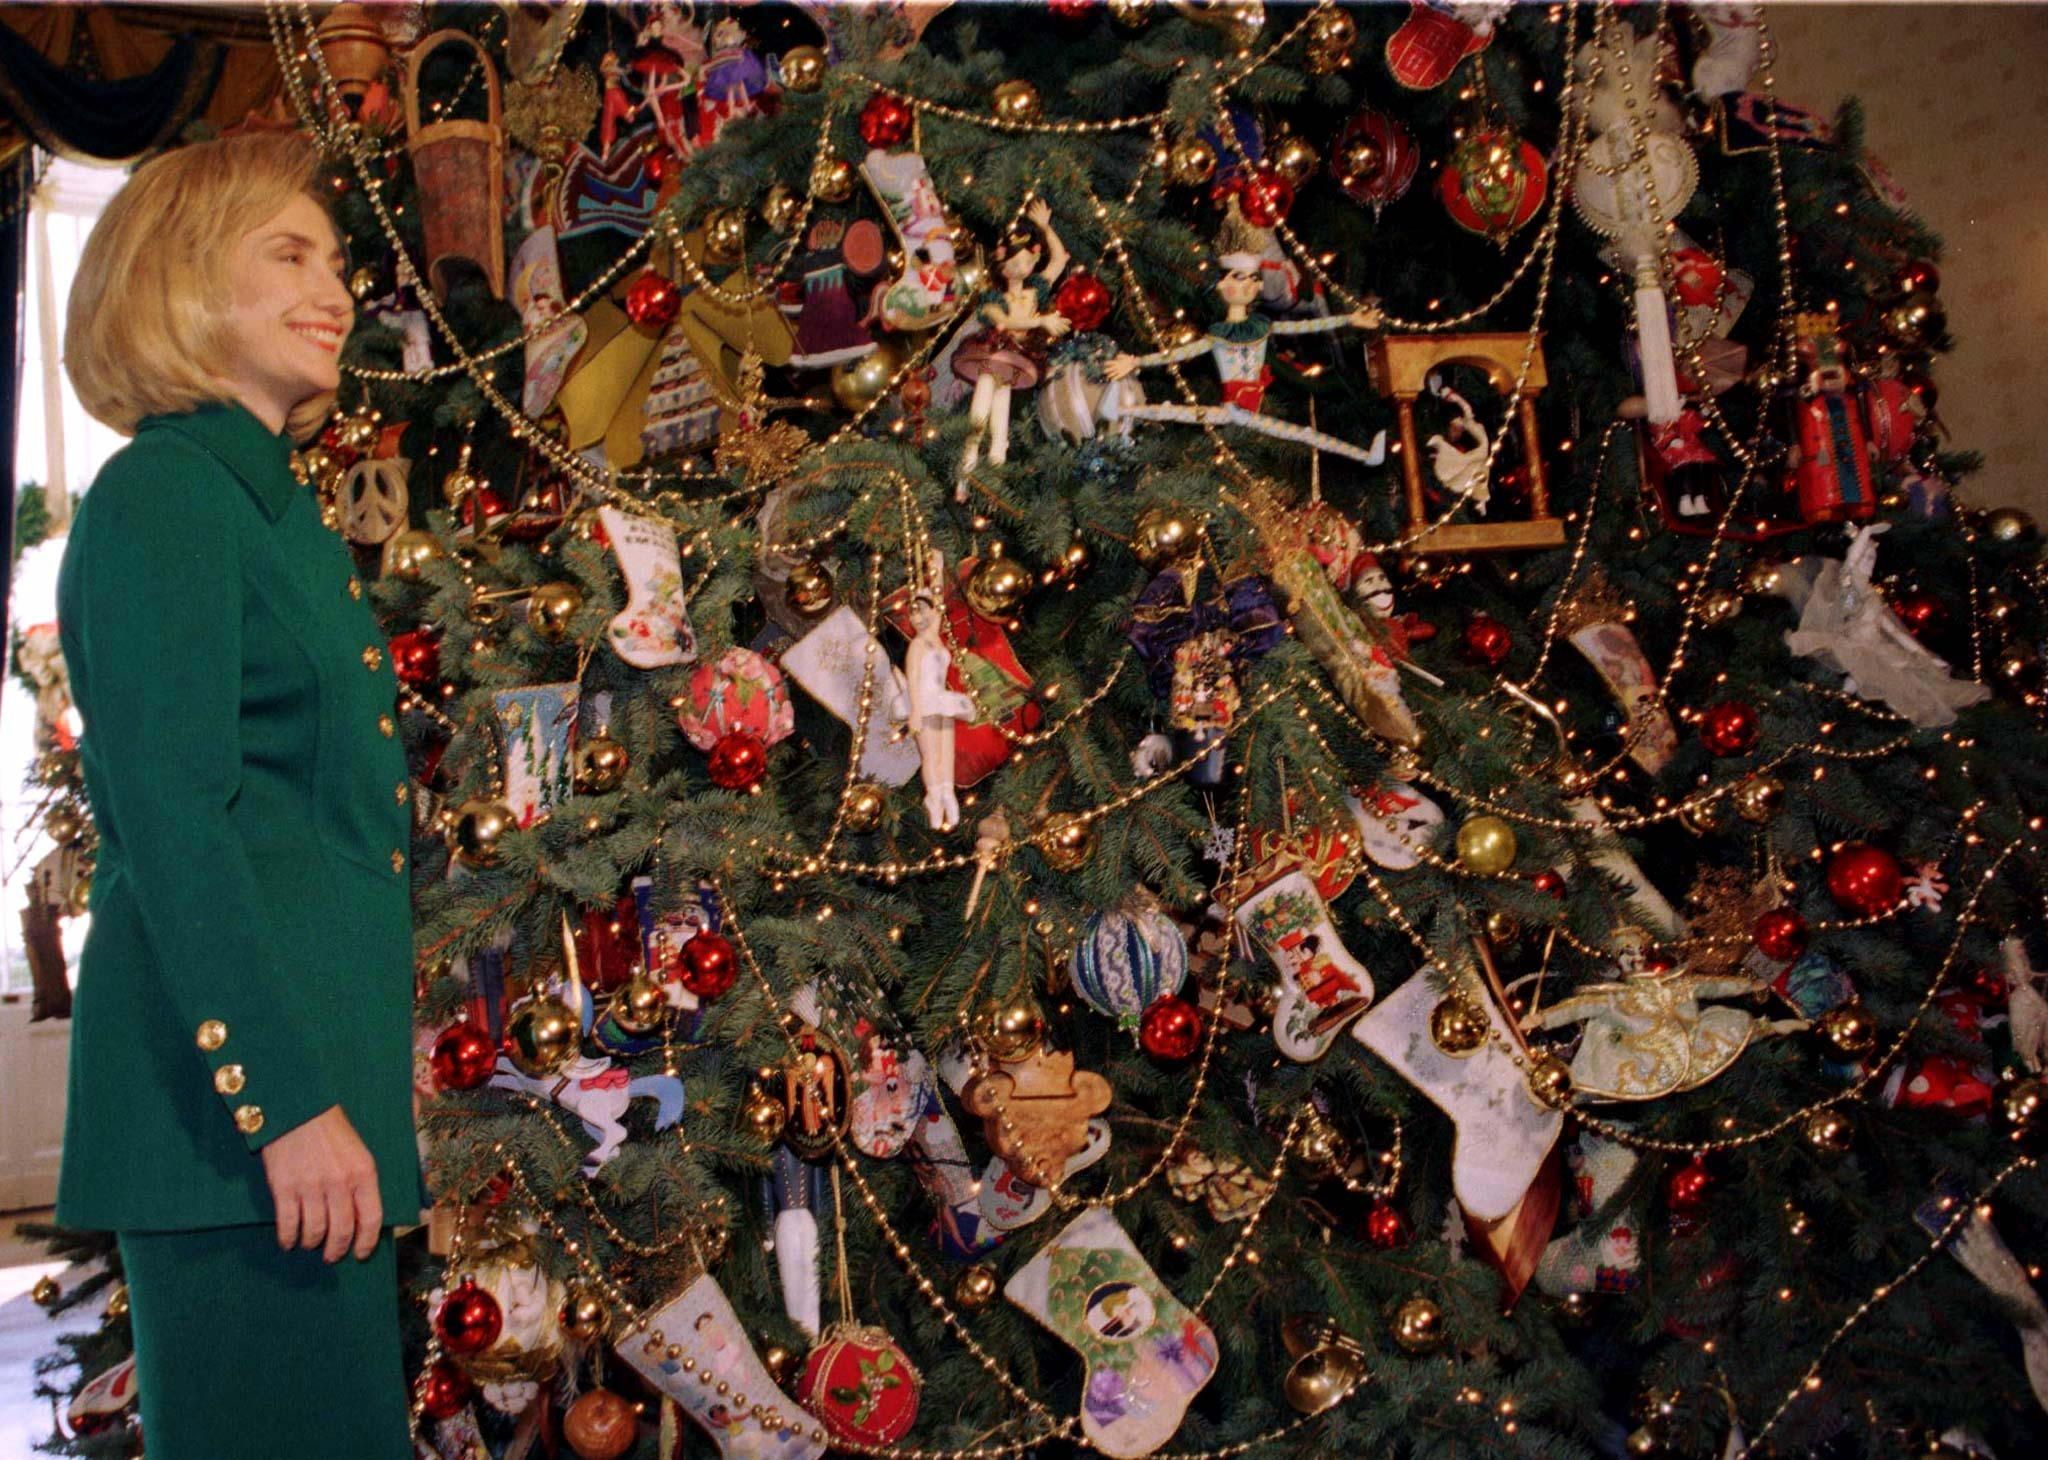 Auch im folgenden Jahr 1996 präsentierte Hillary Clinton wieder im grünen Kostüm die Weihnachtsdeko im Weißen Haus. F

HILLARY CLINTON